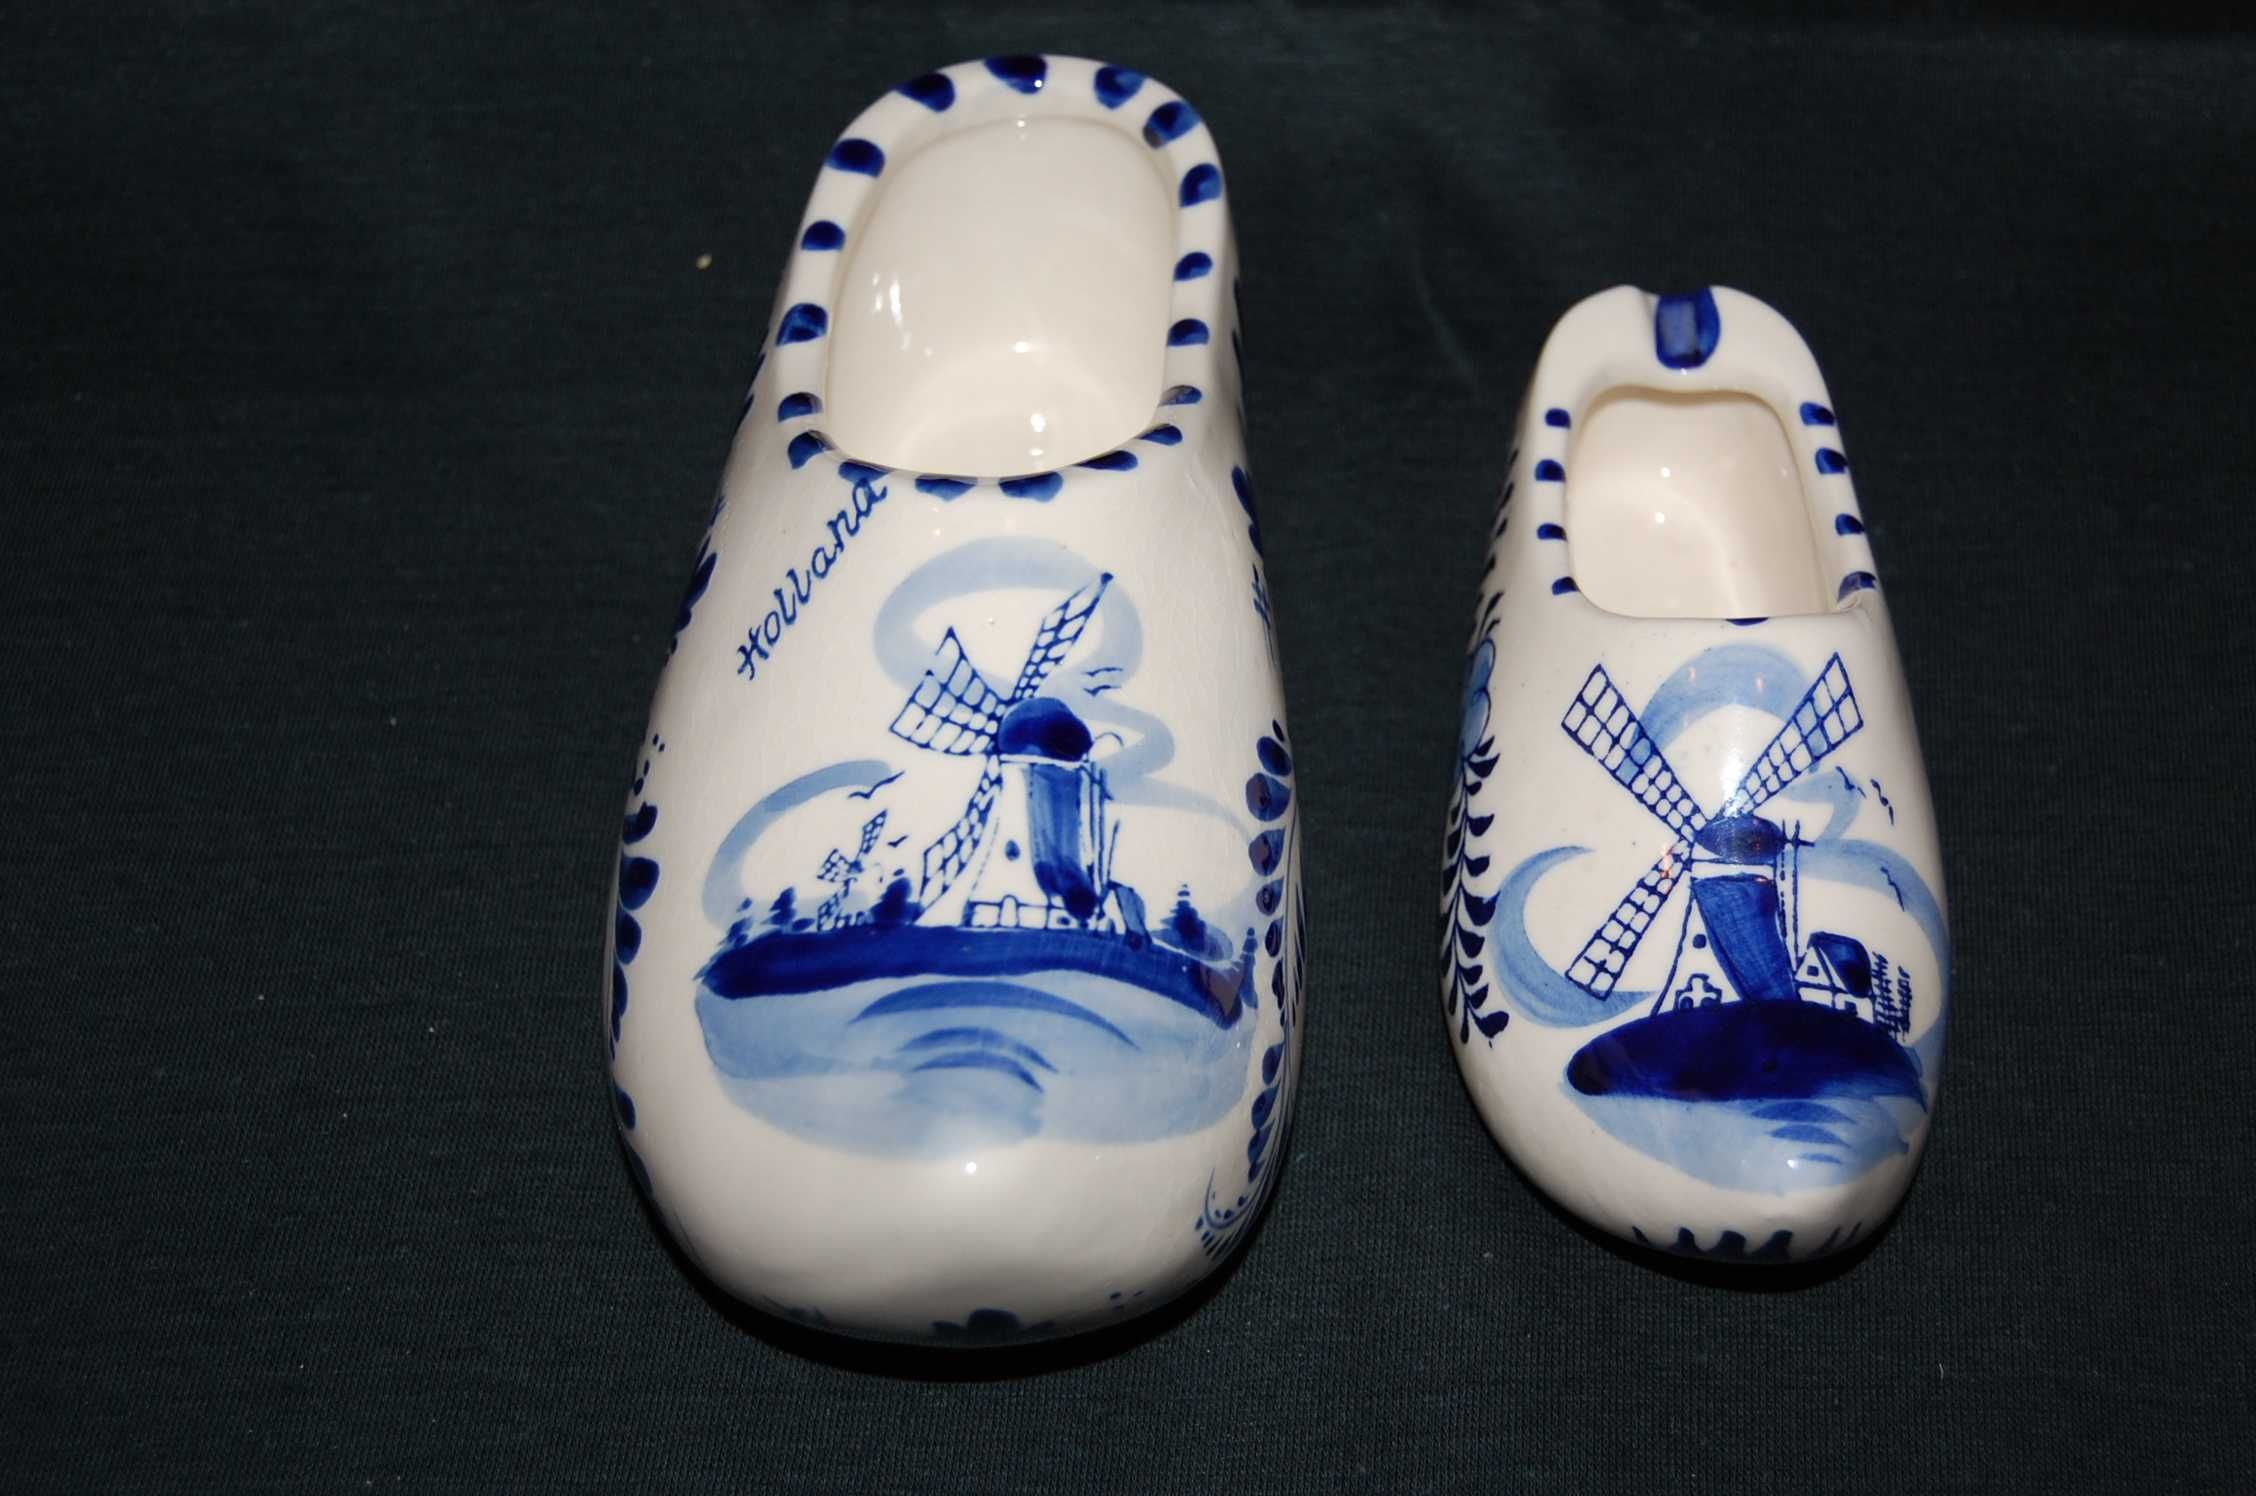 Buty ceramiczne, ręcznie malowane, syg. Holland Delft - 19 i 14,5 cm